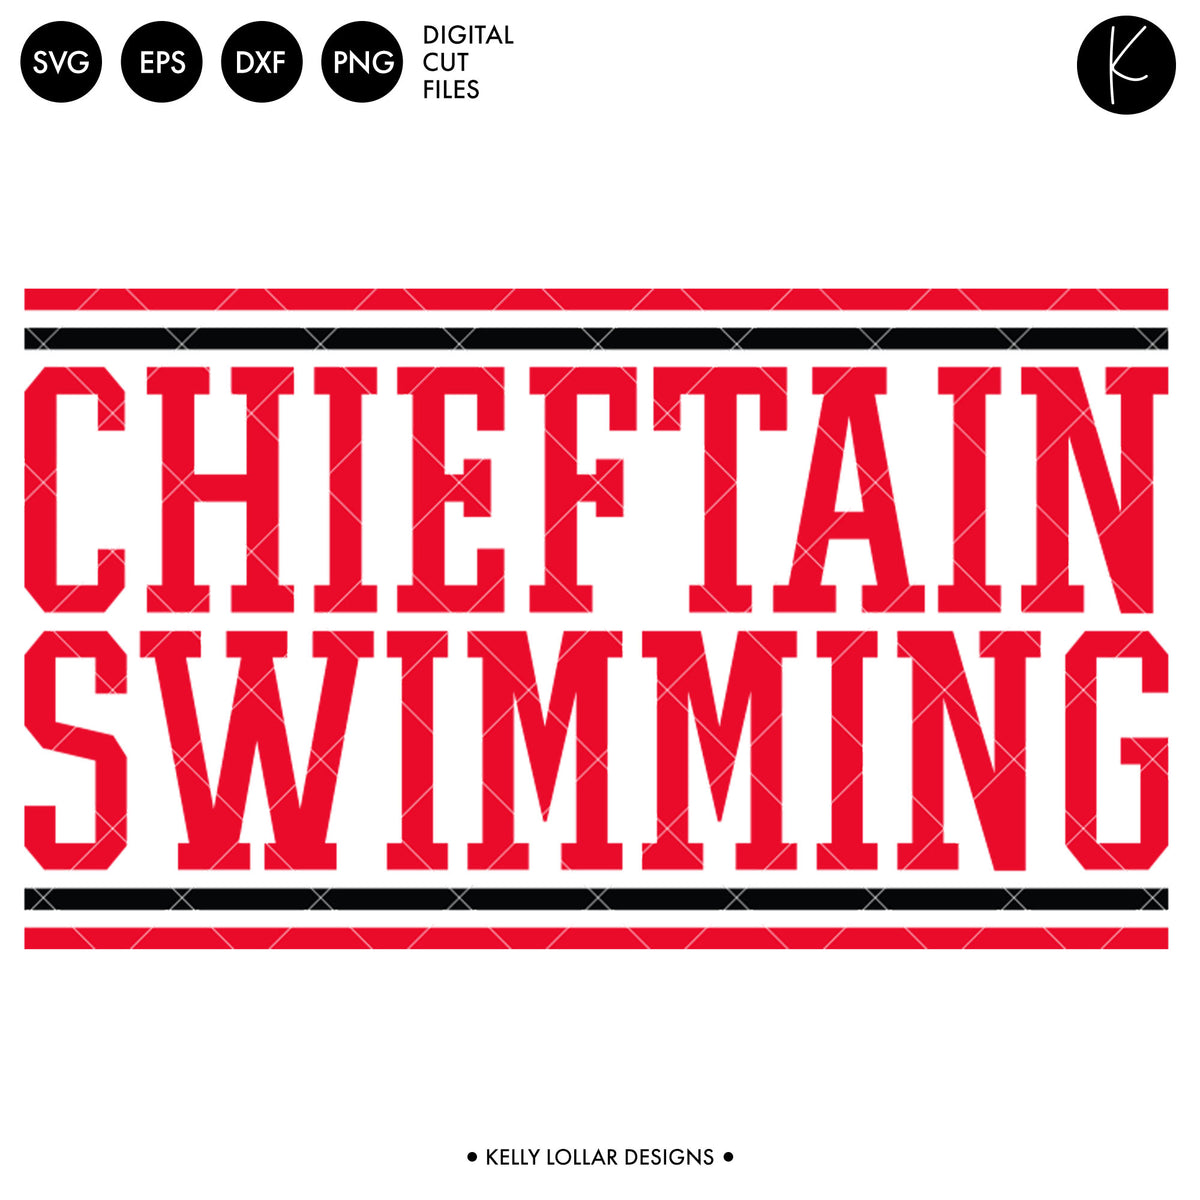 Chieftains Swim Bundle | SVG DXF EPS PNG Cut Files